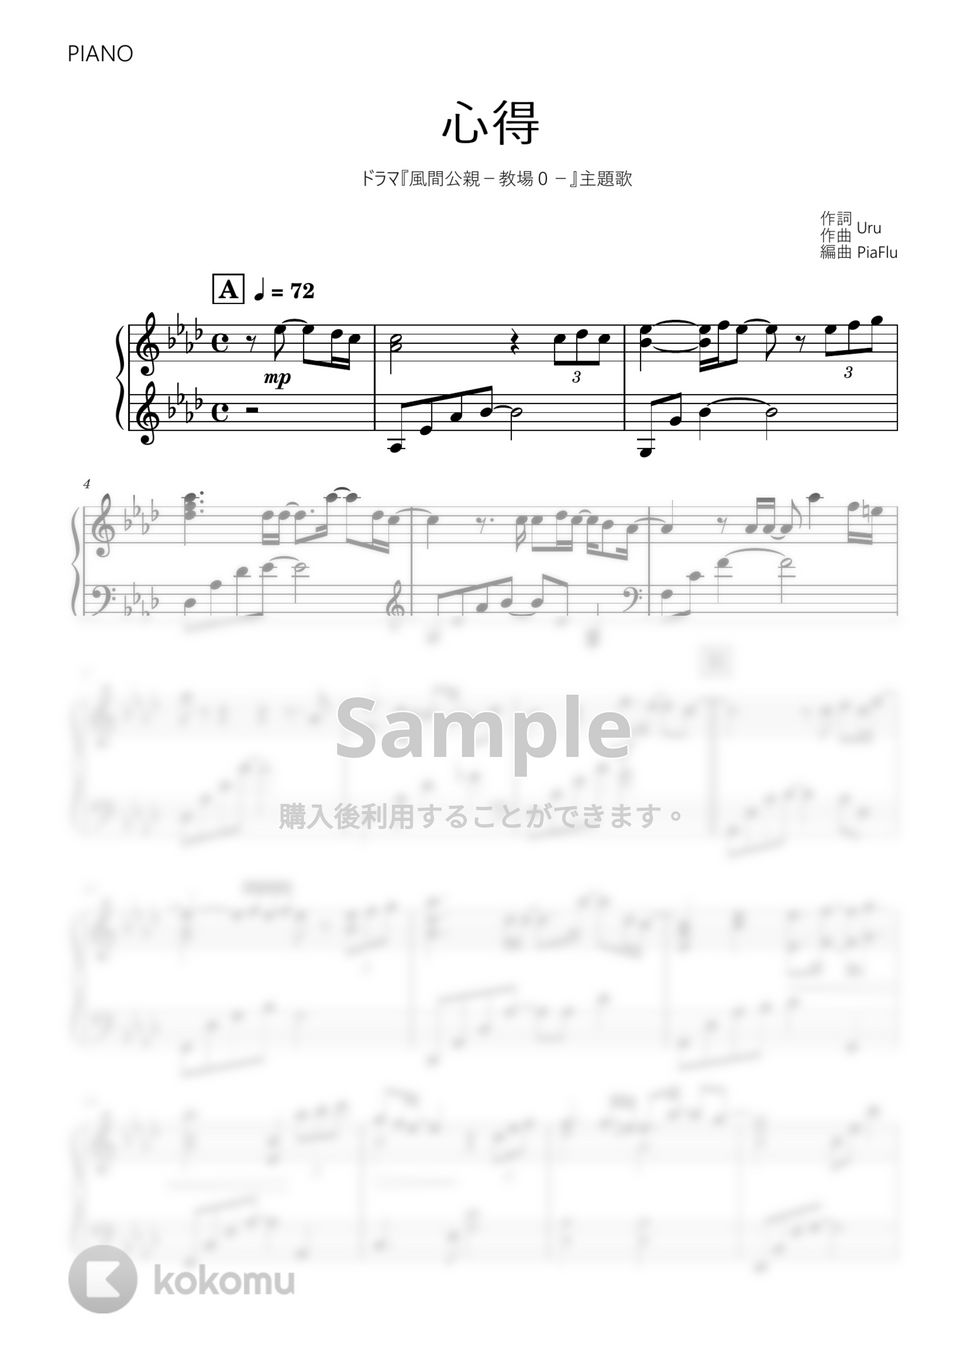 Uru - 心得 (ピアノ) by PiaFlu